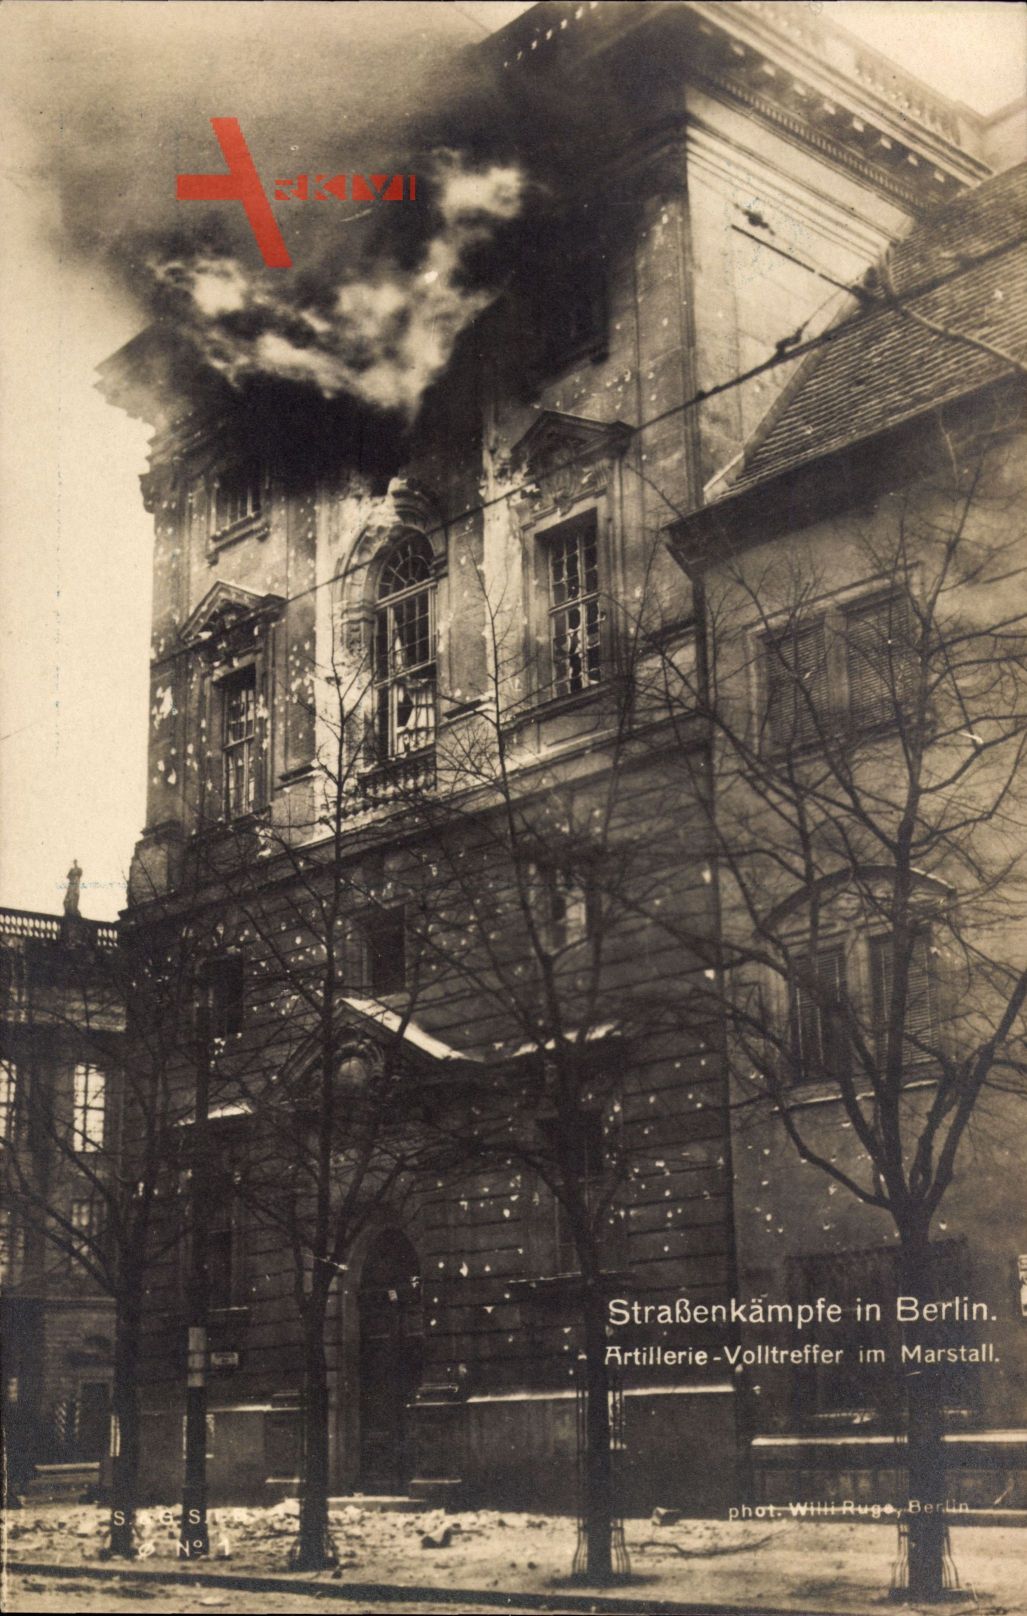 Berlin, Artillerie Volltreffer im Marstall, Novemberrevolution 1918, Brand